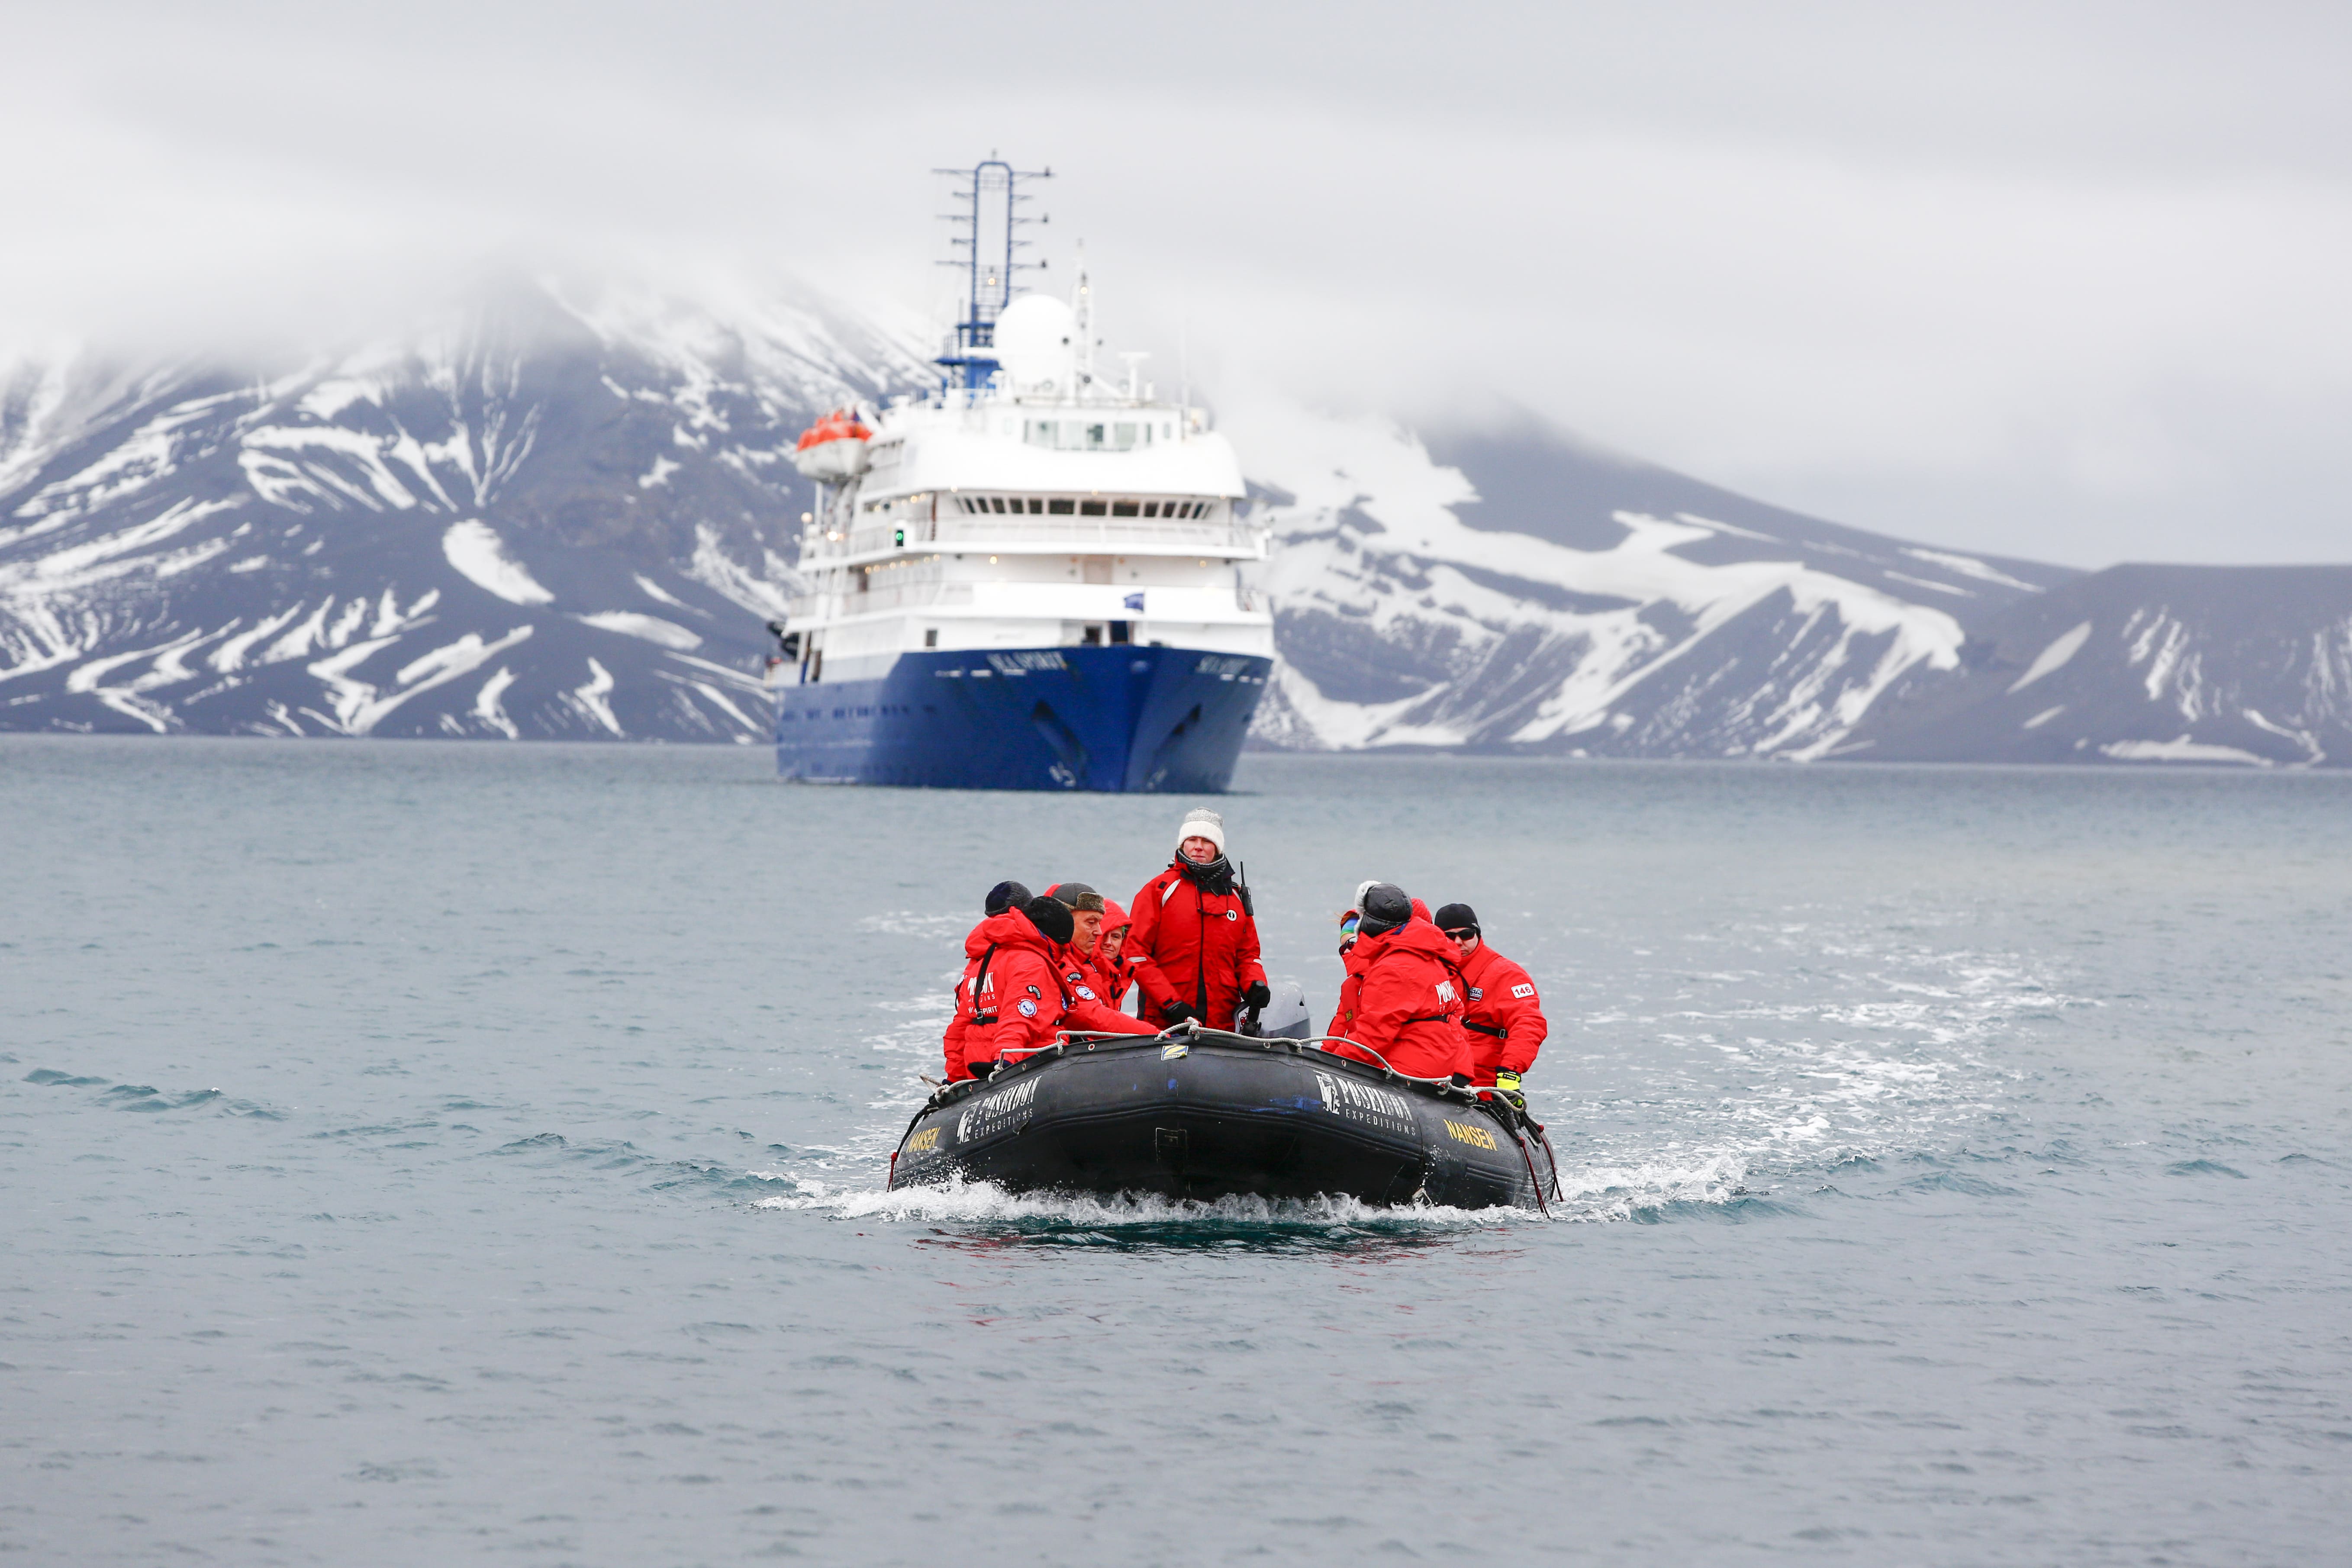 Active adventures in small ship polar cruises